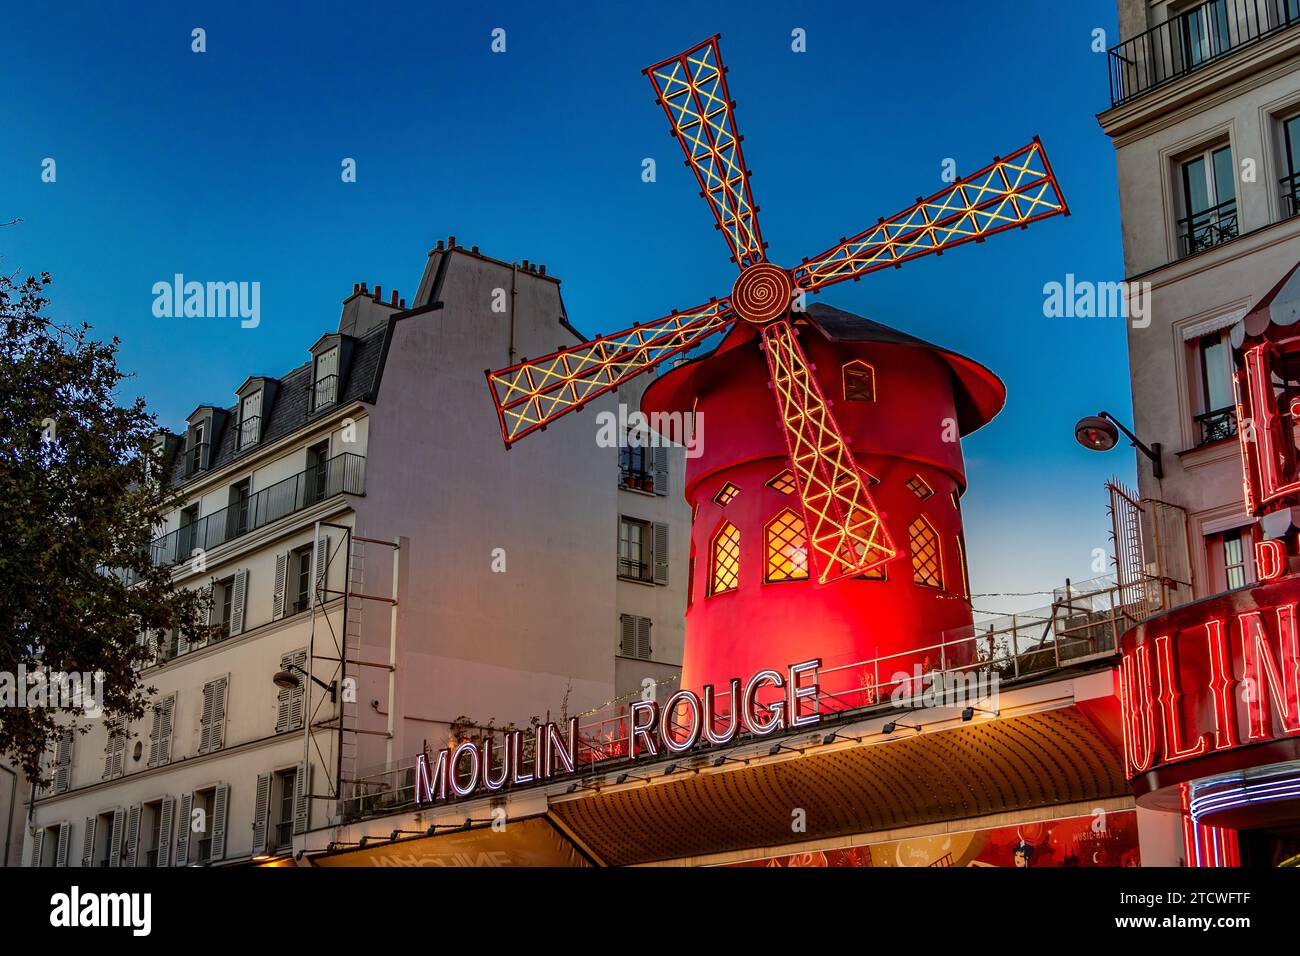 Moulin Rouge,a world famous cabaret venue in Montmartre,Paris ,France Stock Photo